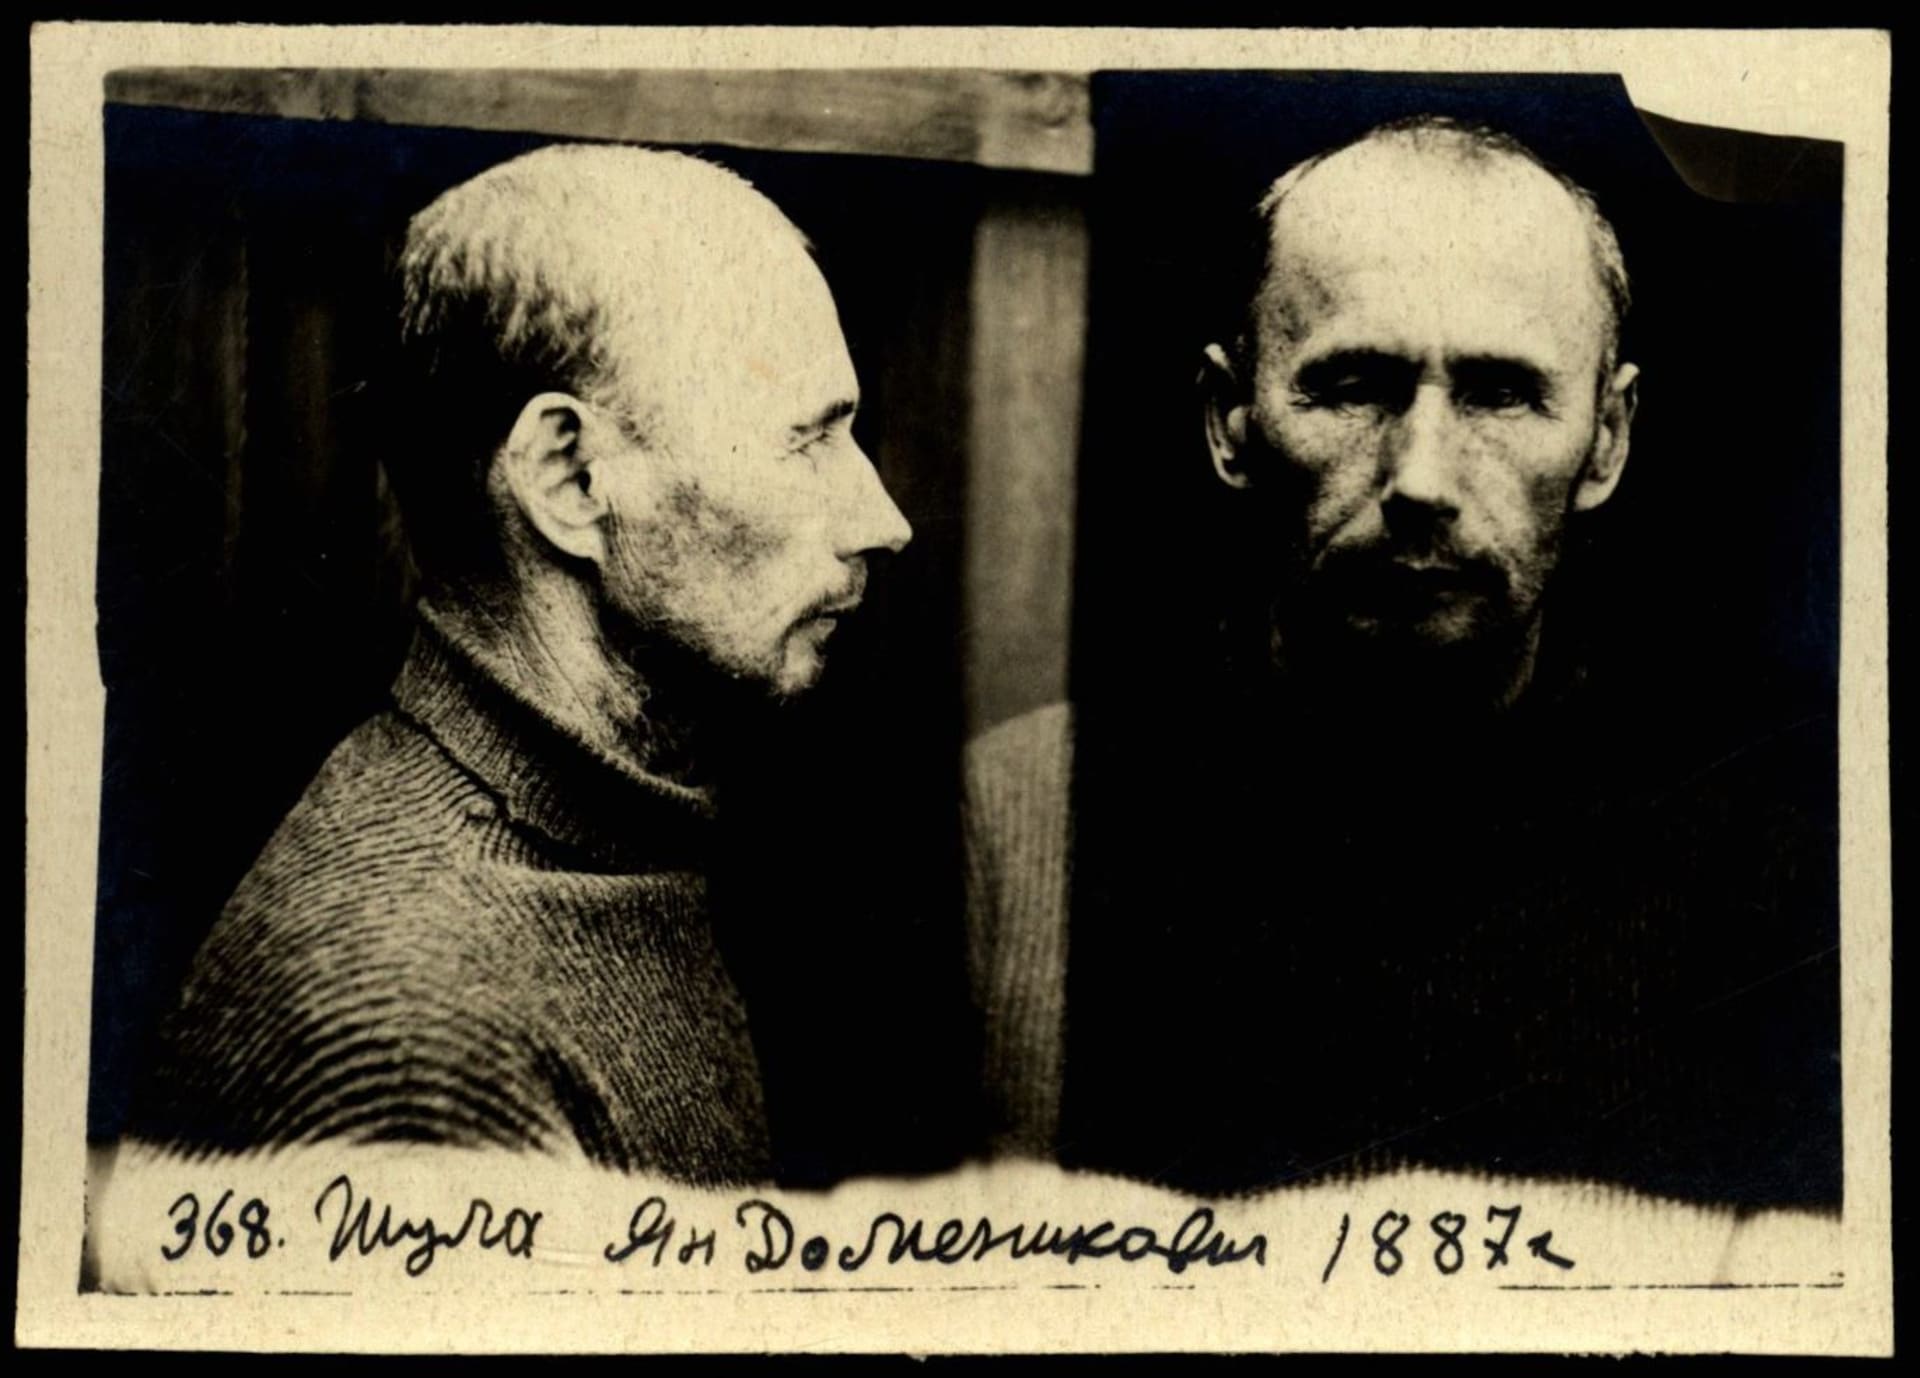 Jedna z obětí, Jan Šula krátce po zatčení NKVD.